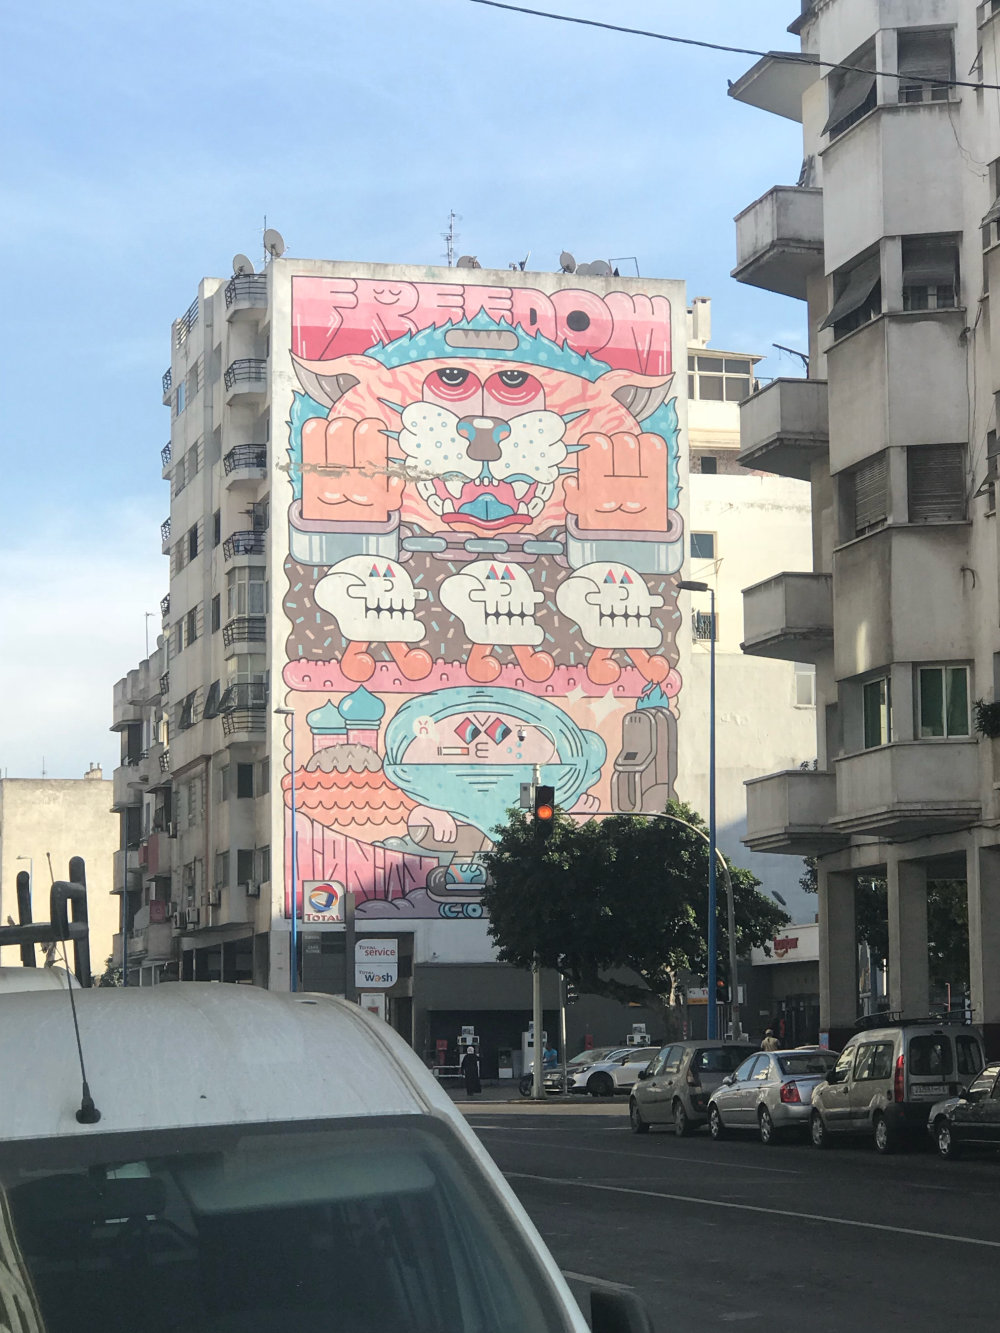 mural in Casablanca by artist GR170.